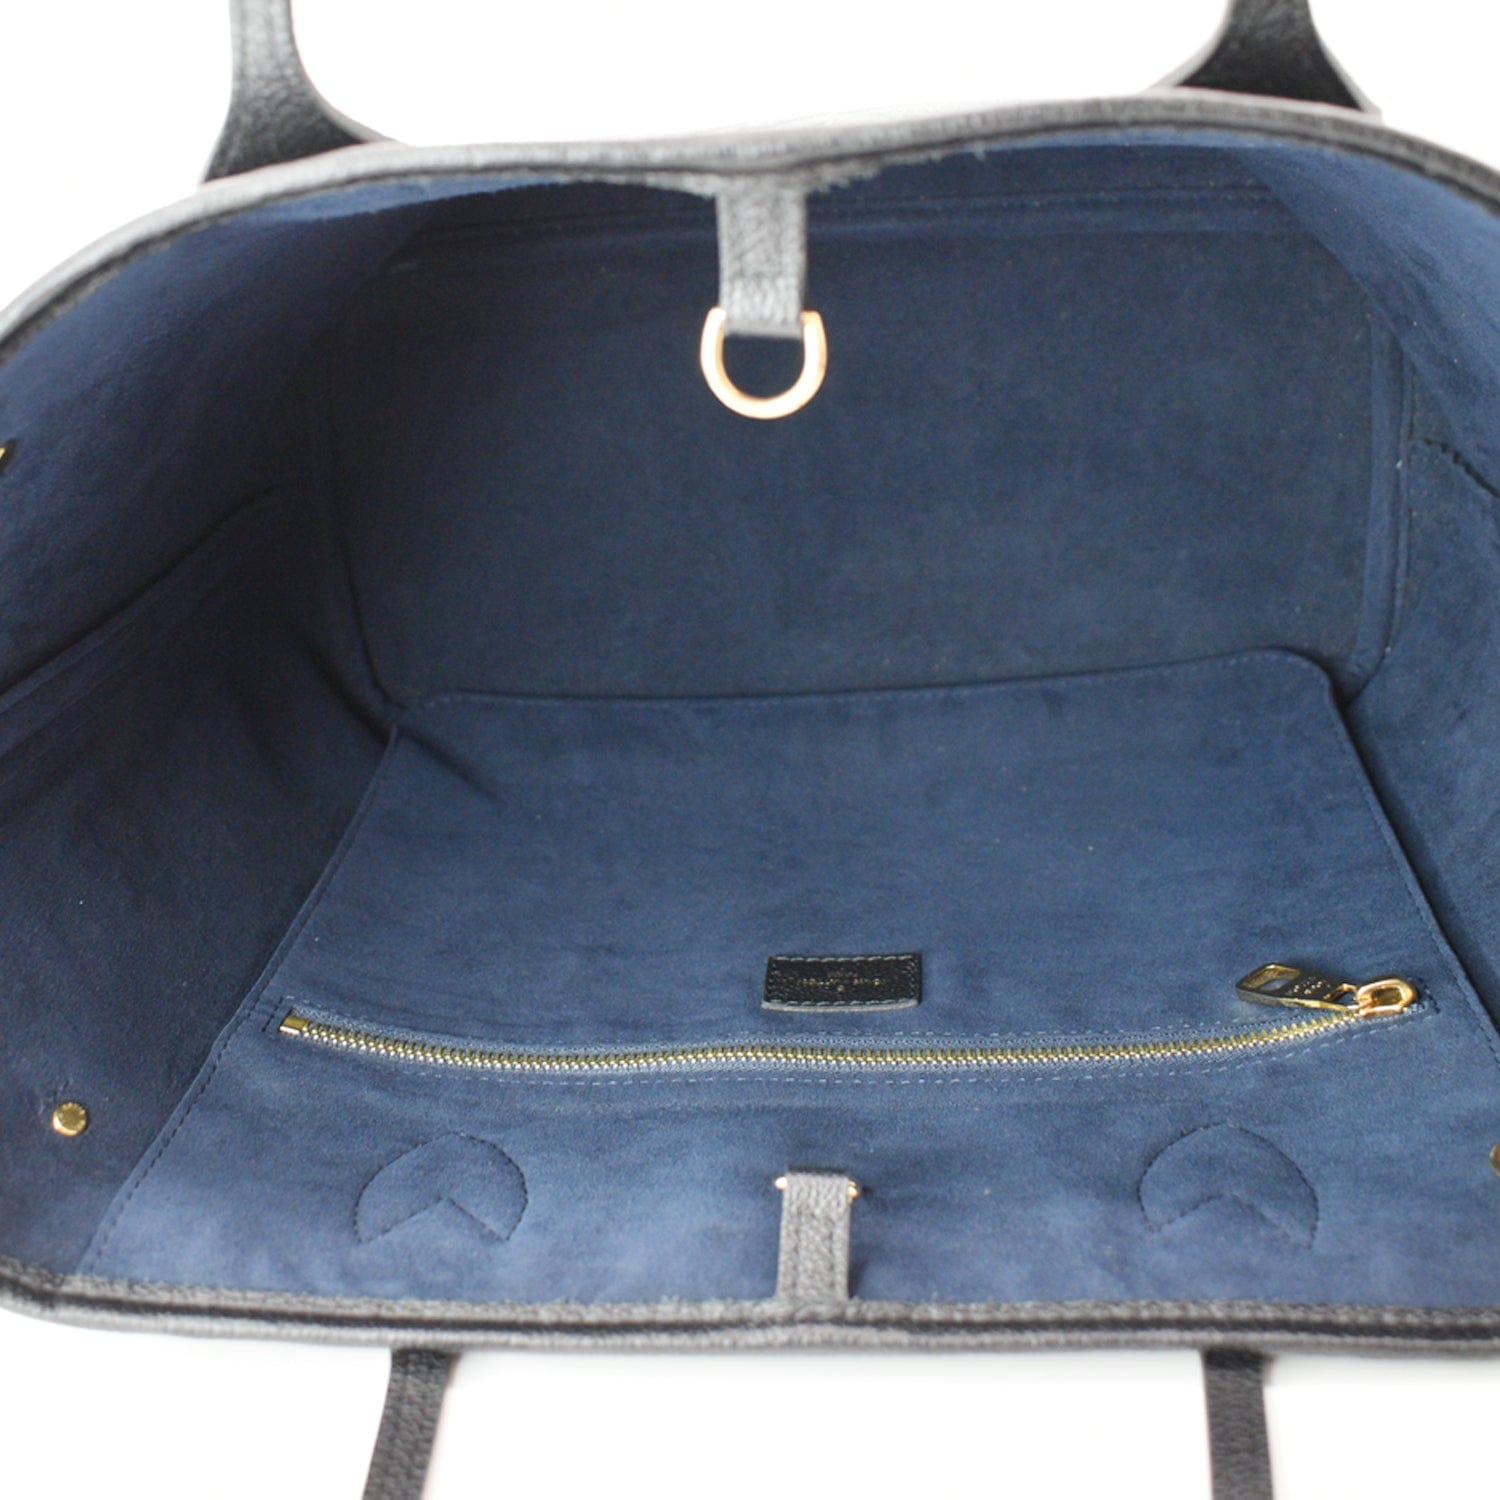 black louis vuitton bag with blue inside